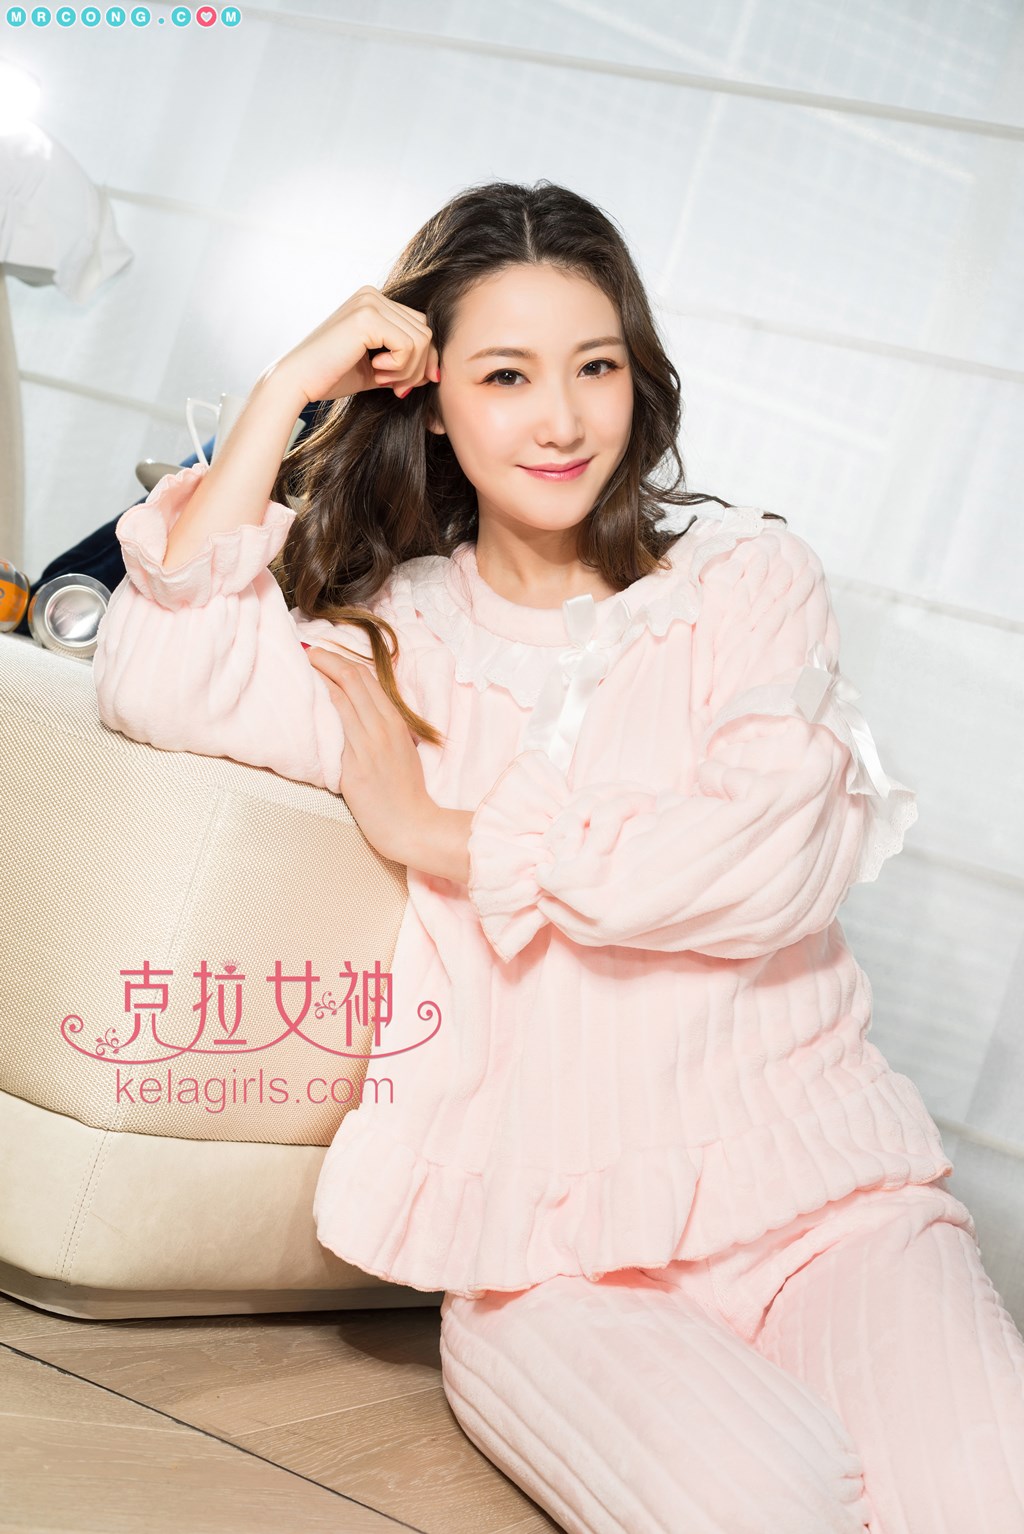 KelaGirls 2018-02-05: Model Yang Nuan (杨 暖) (28 photos) photo 1-10